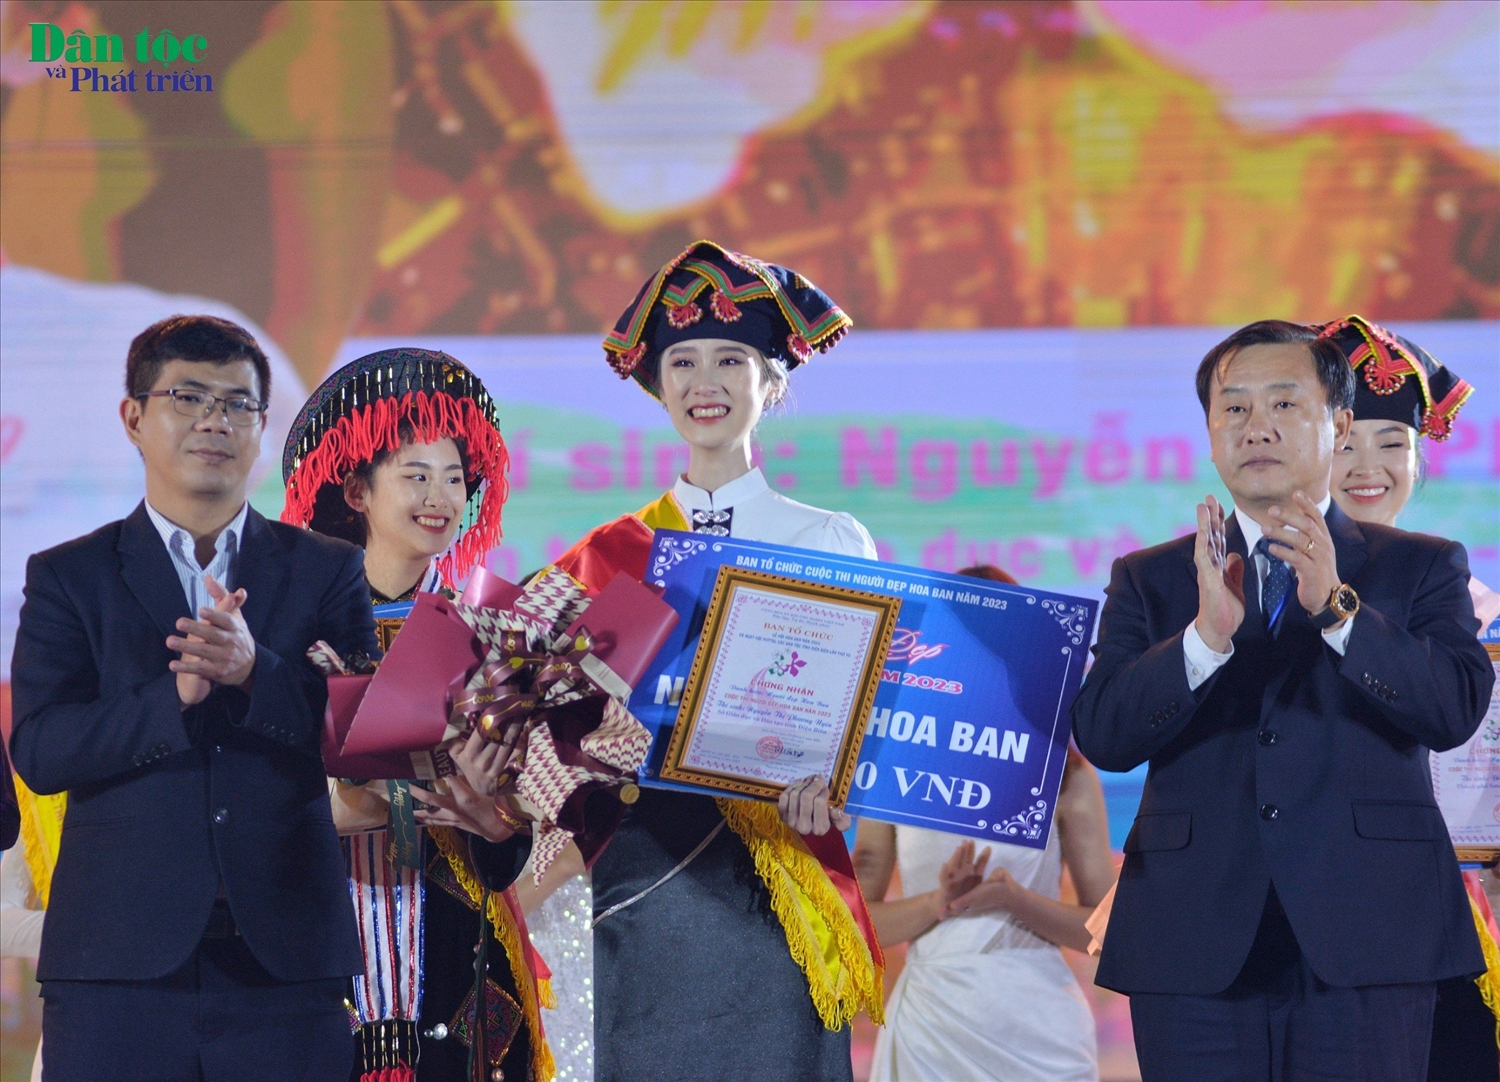 Trao giải Người đẹp Hoa Ban 2023 cho Nguyễn Thị Phương Uyên